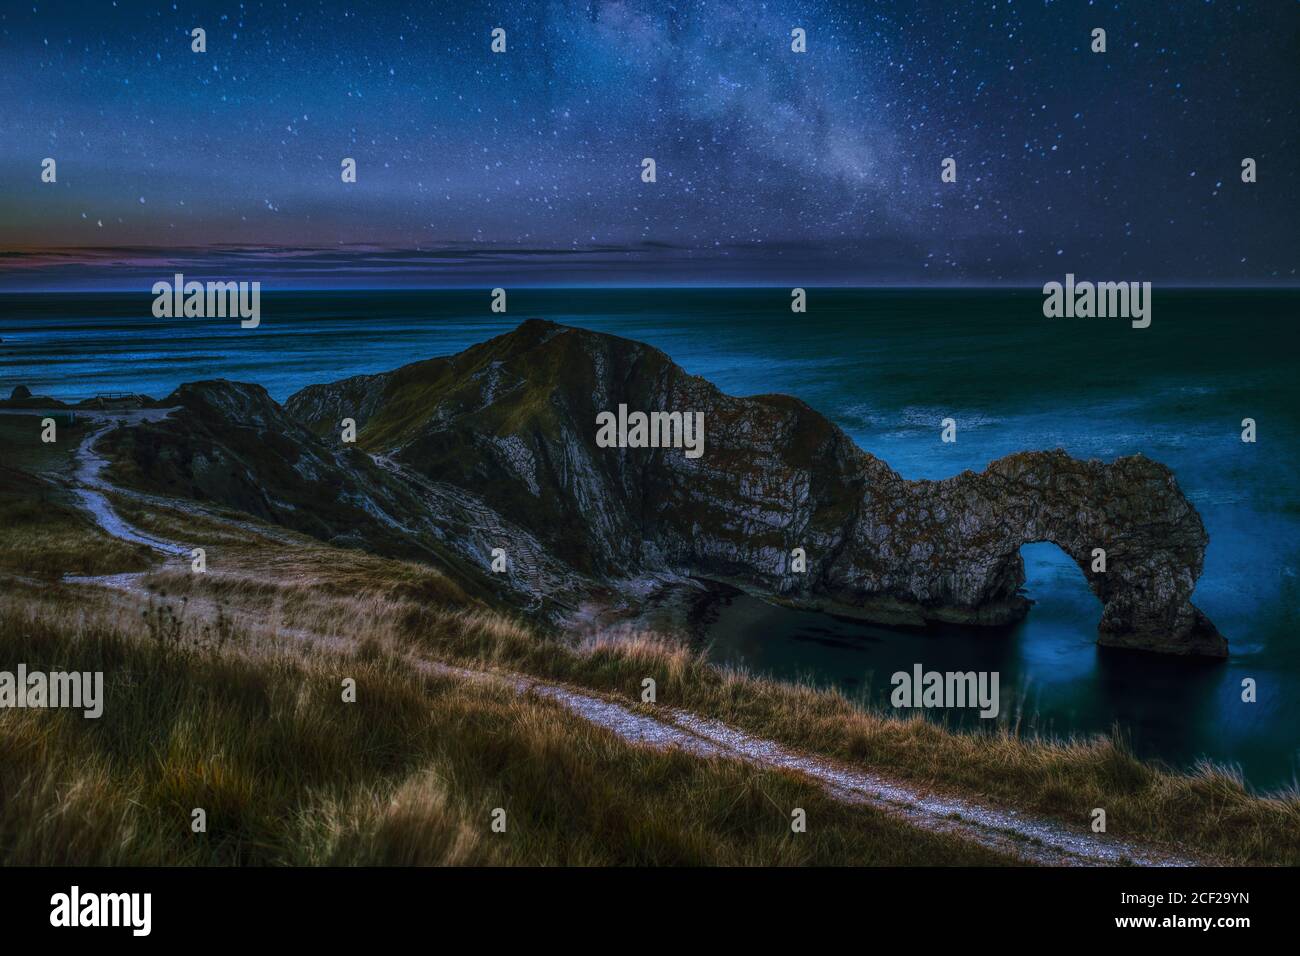 Night Sky Landscape con Milky Way Galaxy sopra il famoso Luogo da visitare e viaggiare Durdle Door English Beach on La costa jurassica del Dorset Foto Stock